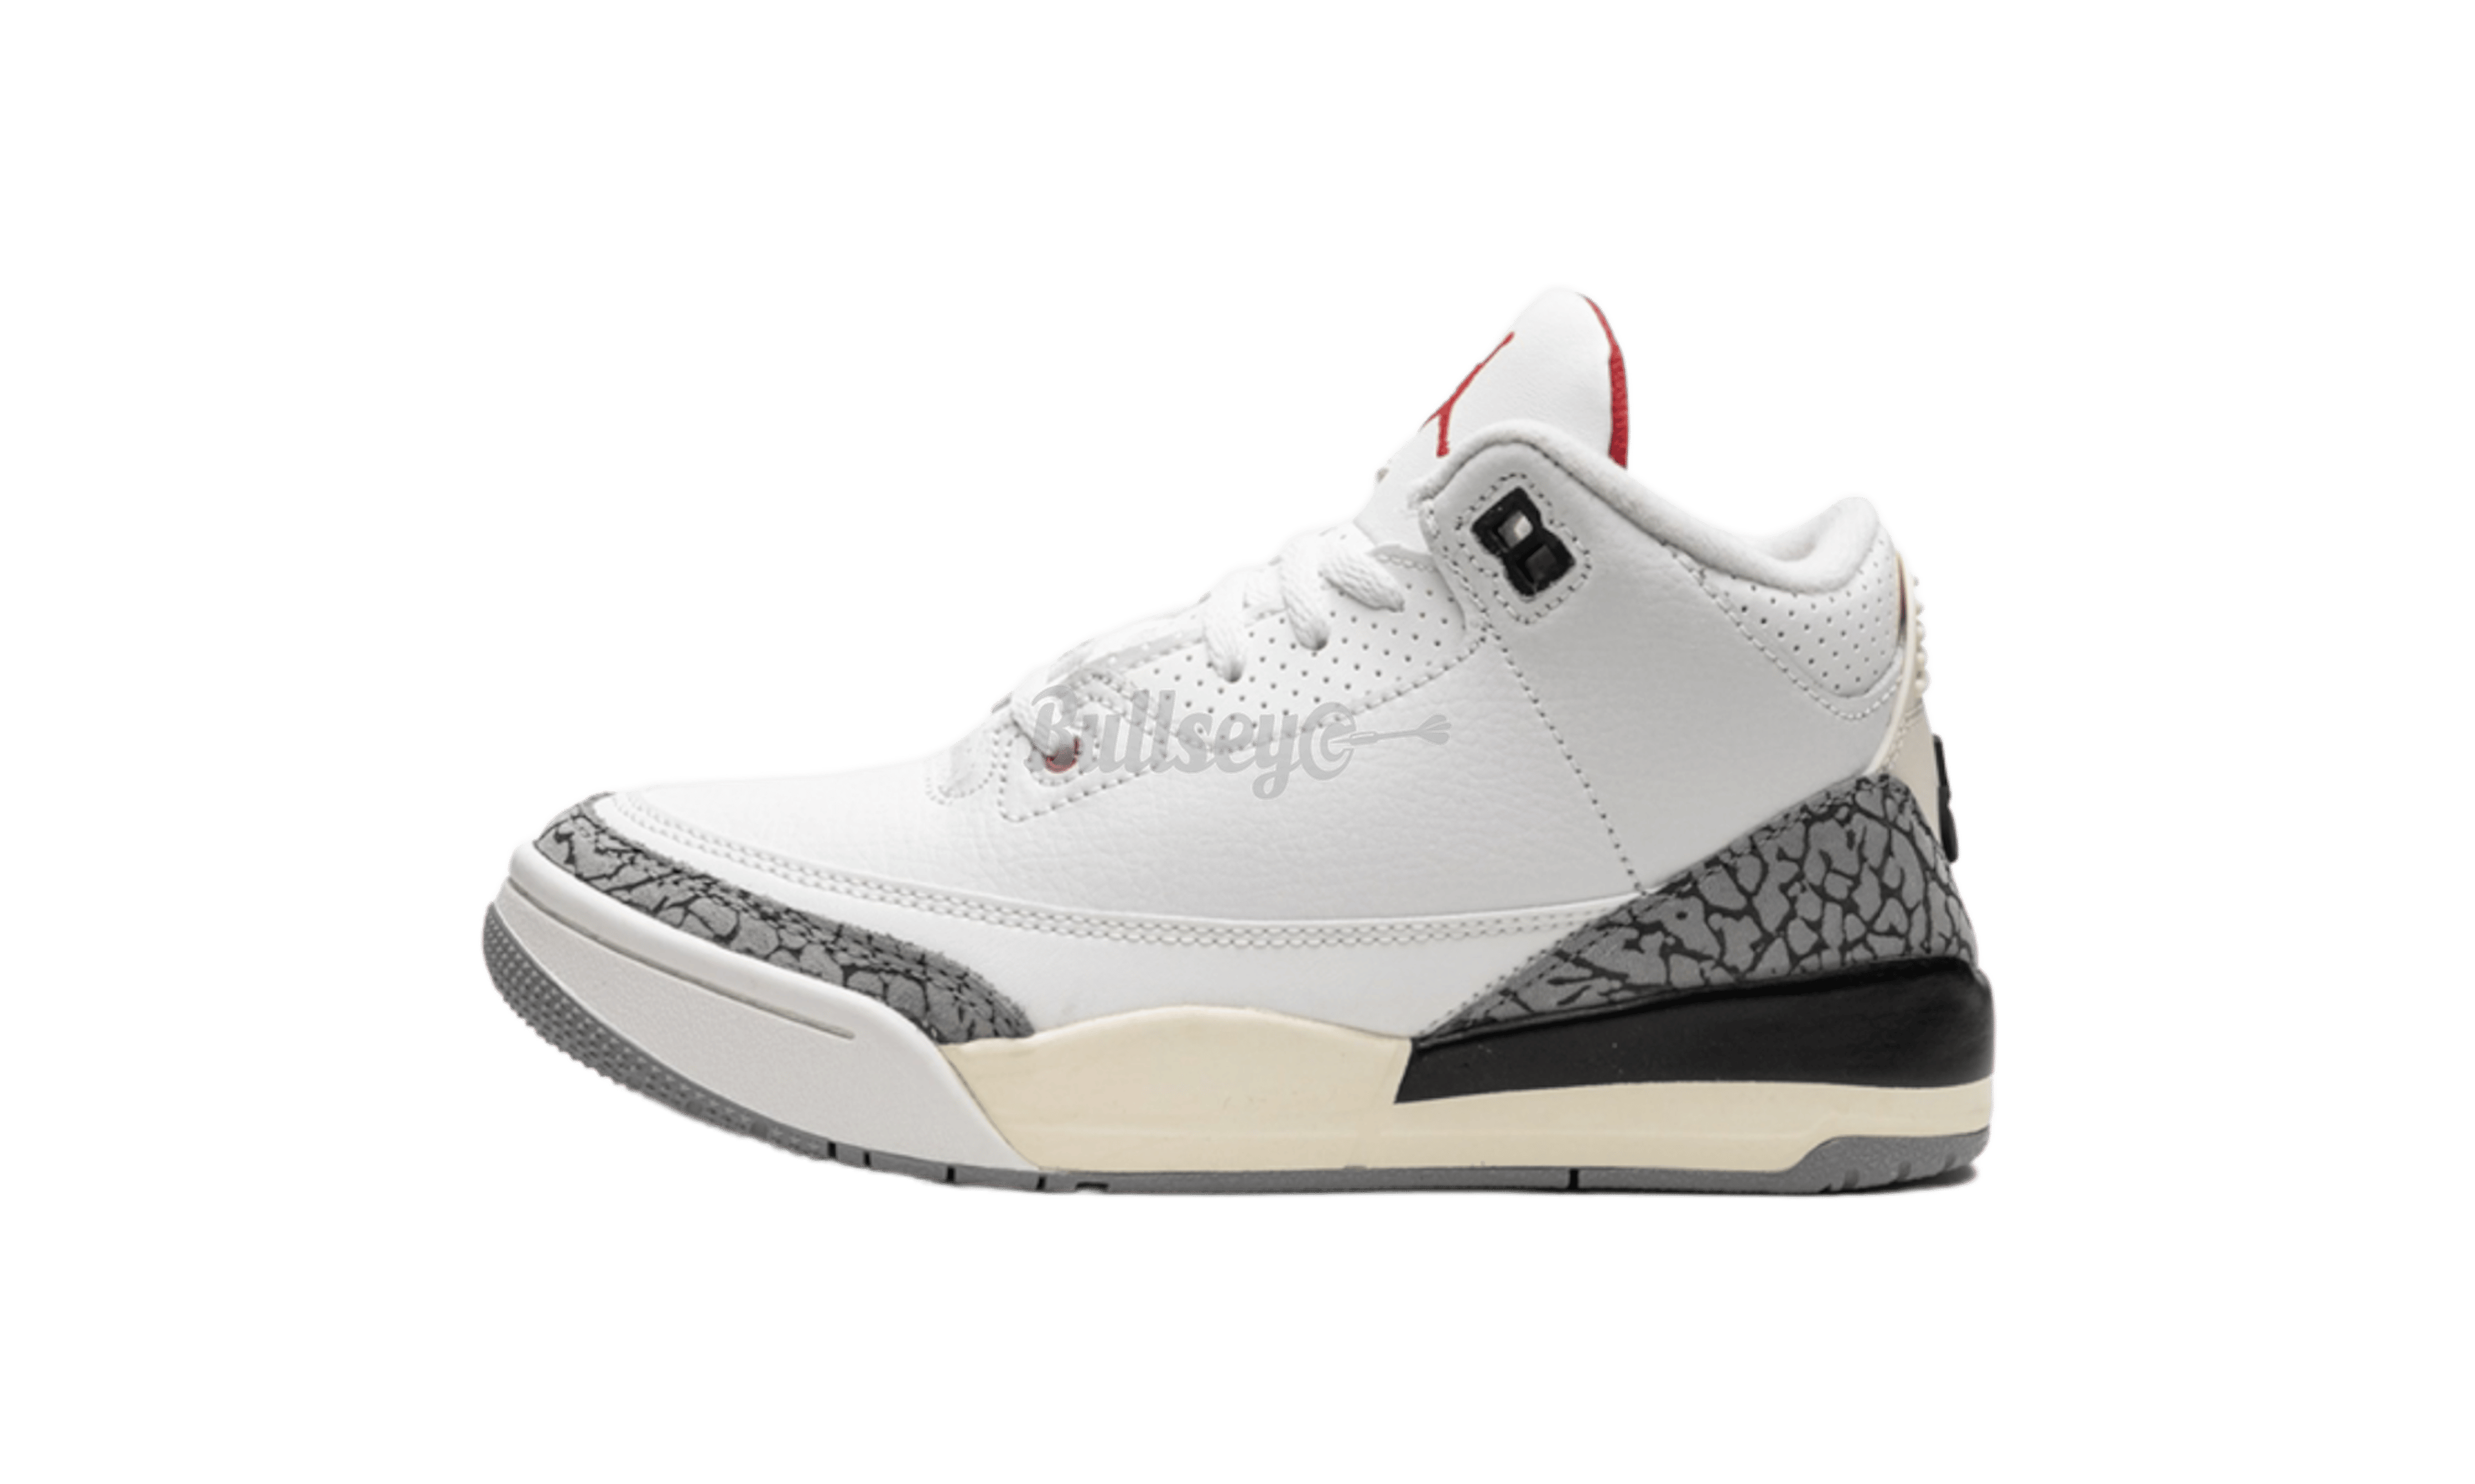 Air Jordan 3 Retro "White Cement Reimagined" Pre-School